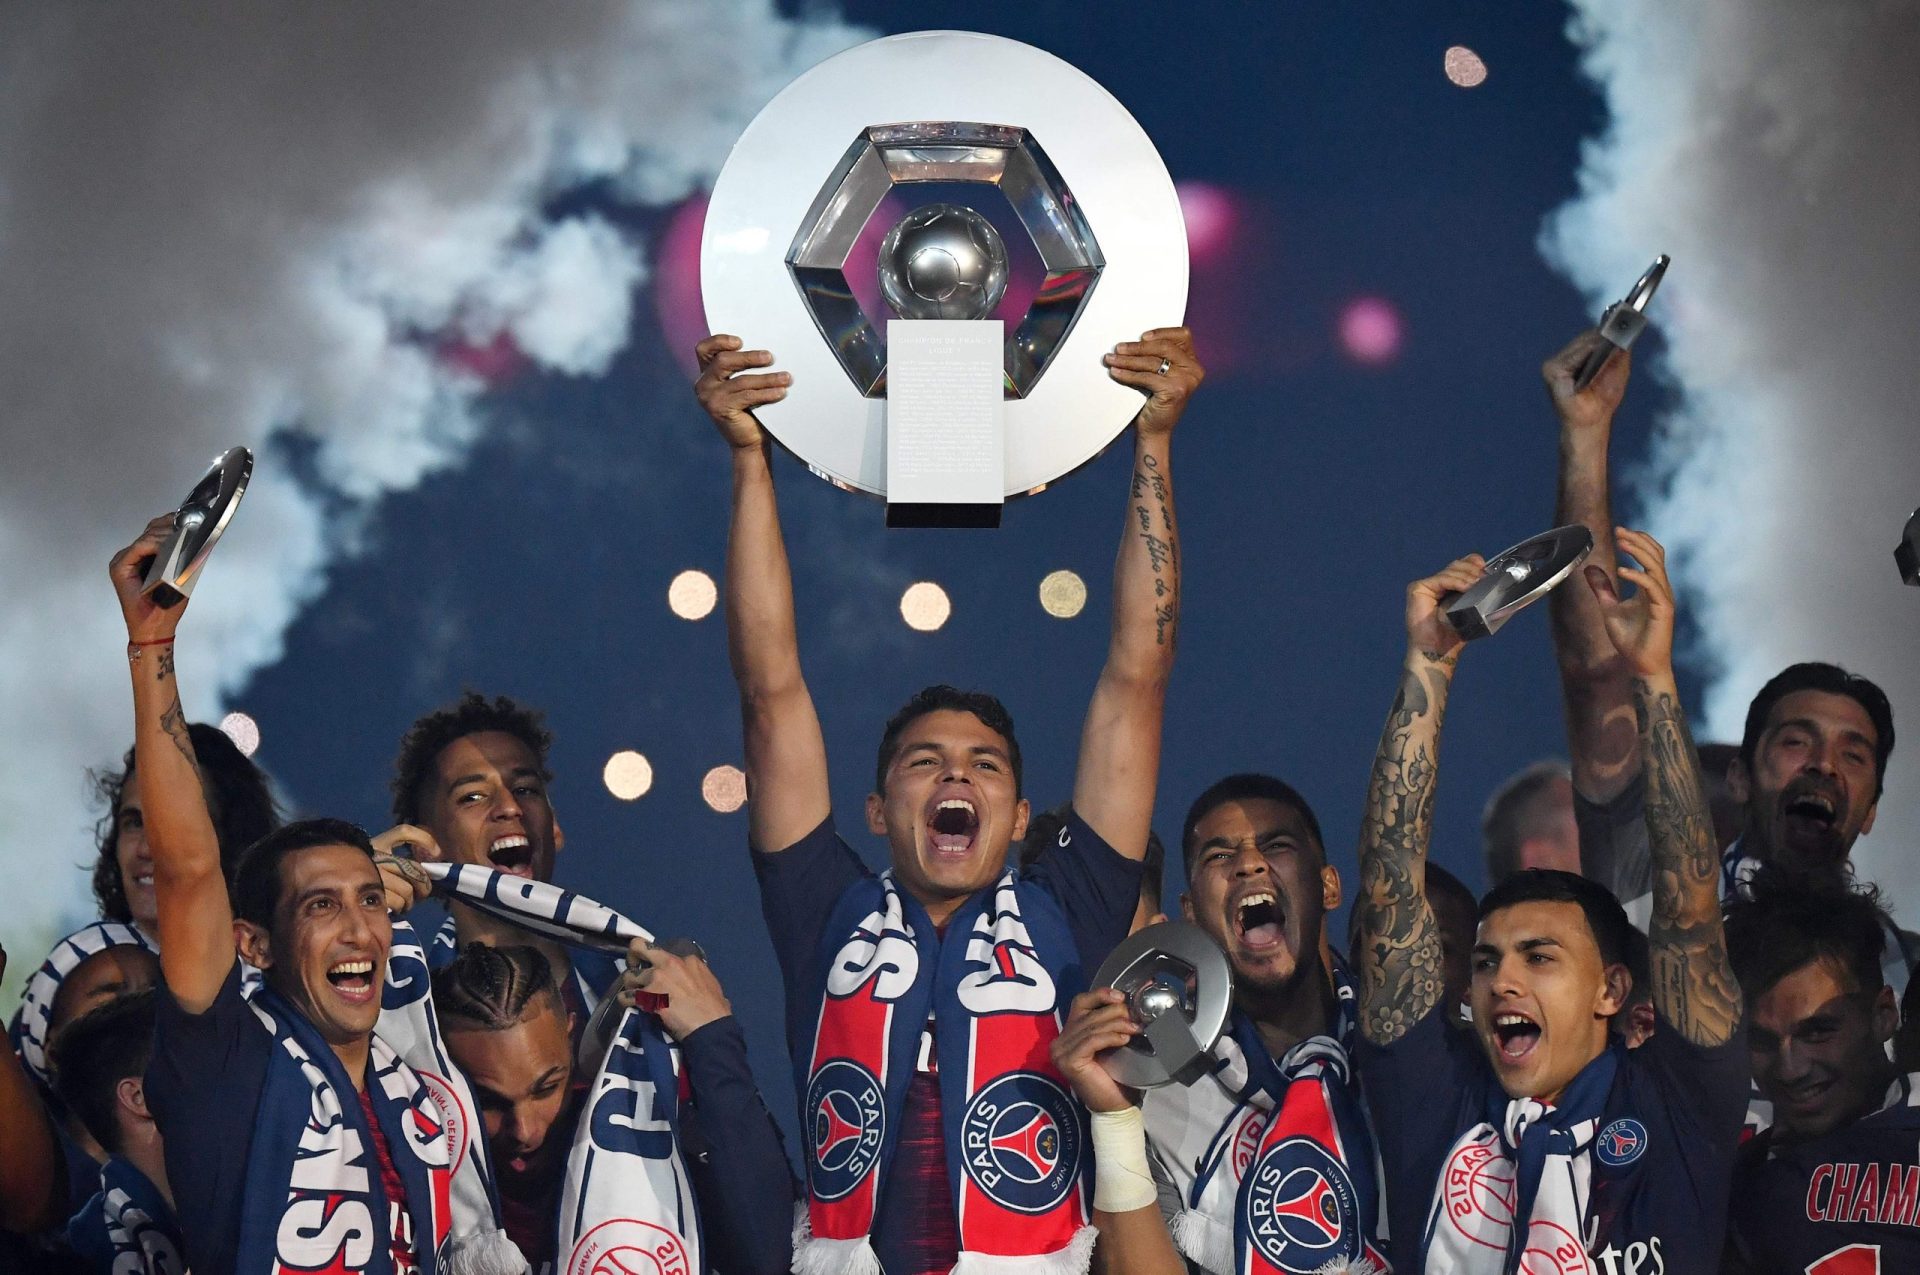 Campeonato francês oficialmente terminado: PSG foi declarado campeão